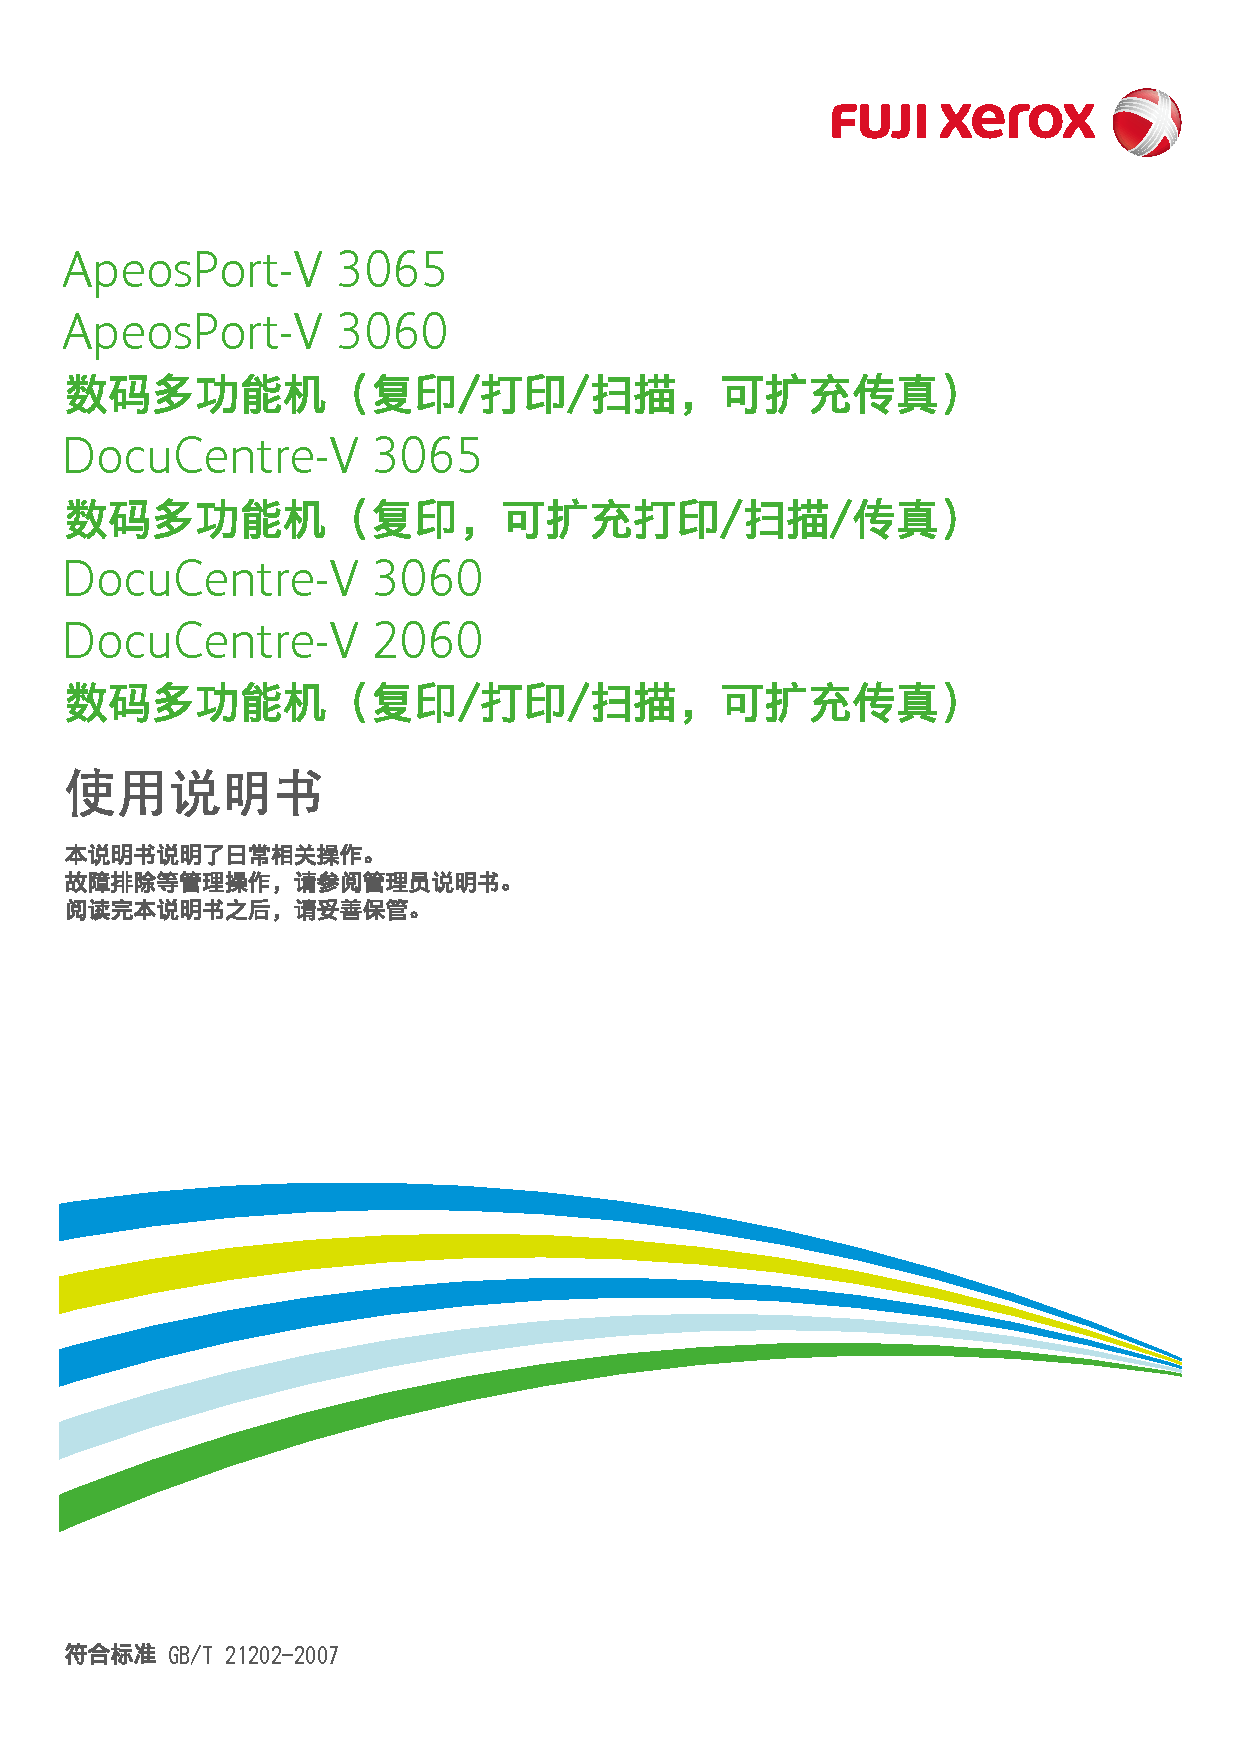 富士施乐 Fuji Xerox ApeosPort-V 2060, DocuCentre-V 2060 使用说明书 封面